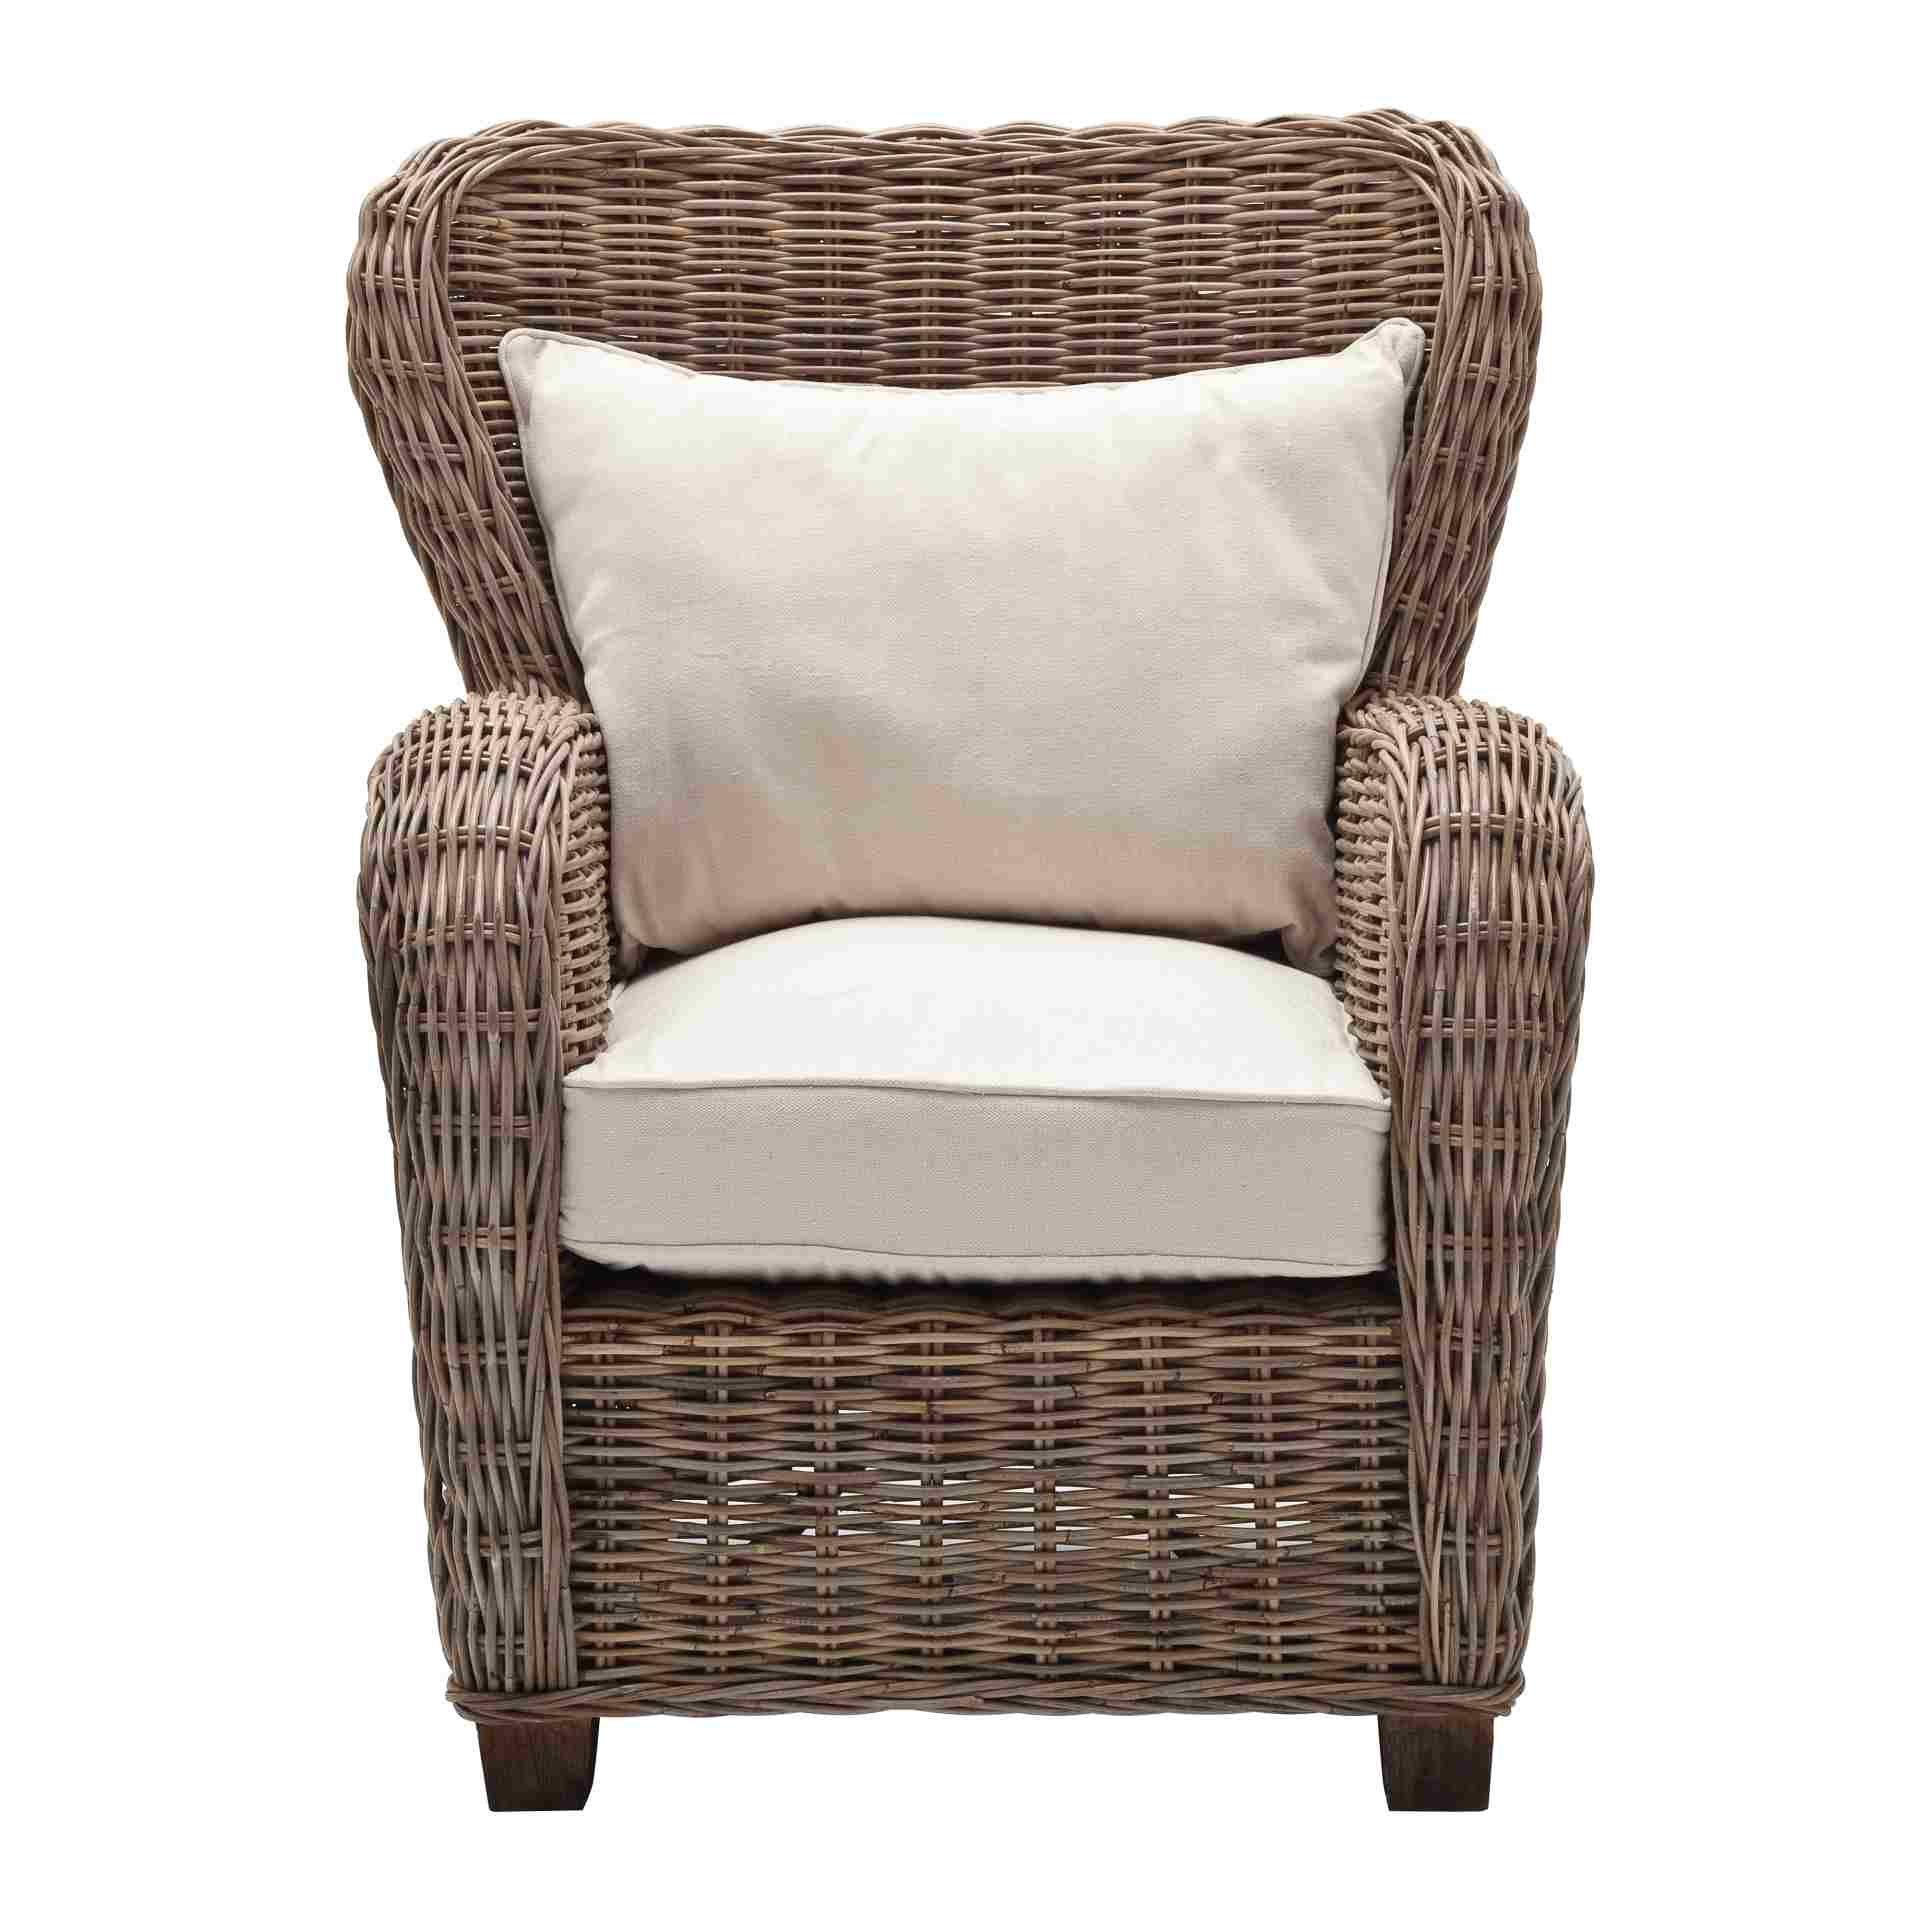 Der Armlehnstuhl Queen überzeugt mit seinem Landhaus Stil. Gefertigt wurde er aus Kabu Rattan, welches einen natürlichen Farbton besitzt. Der Stuhl verfügt über eine Armlehne. Die Sitzhöhe beträgt beträgt 35 cm.